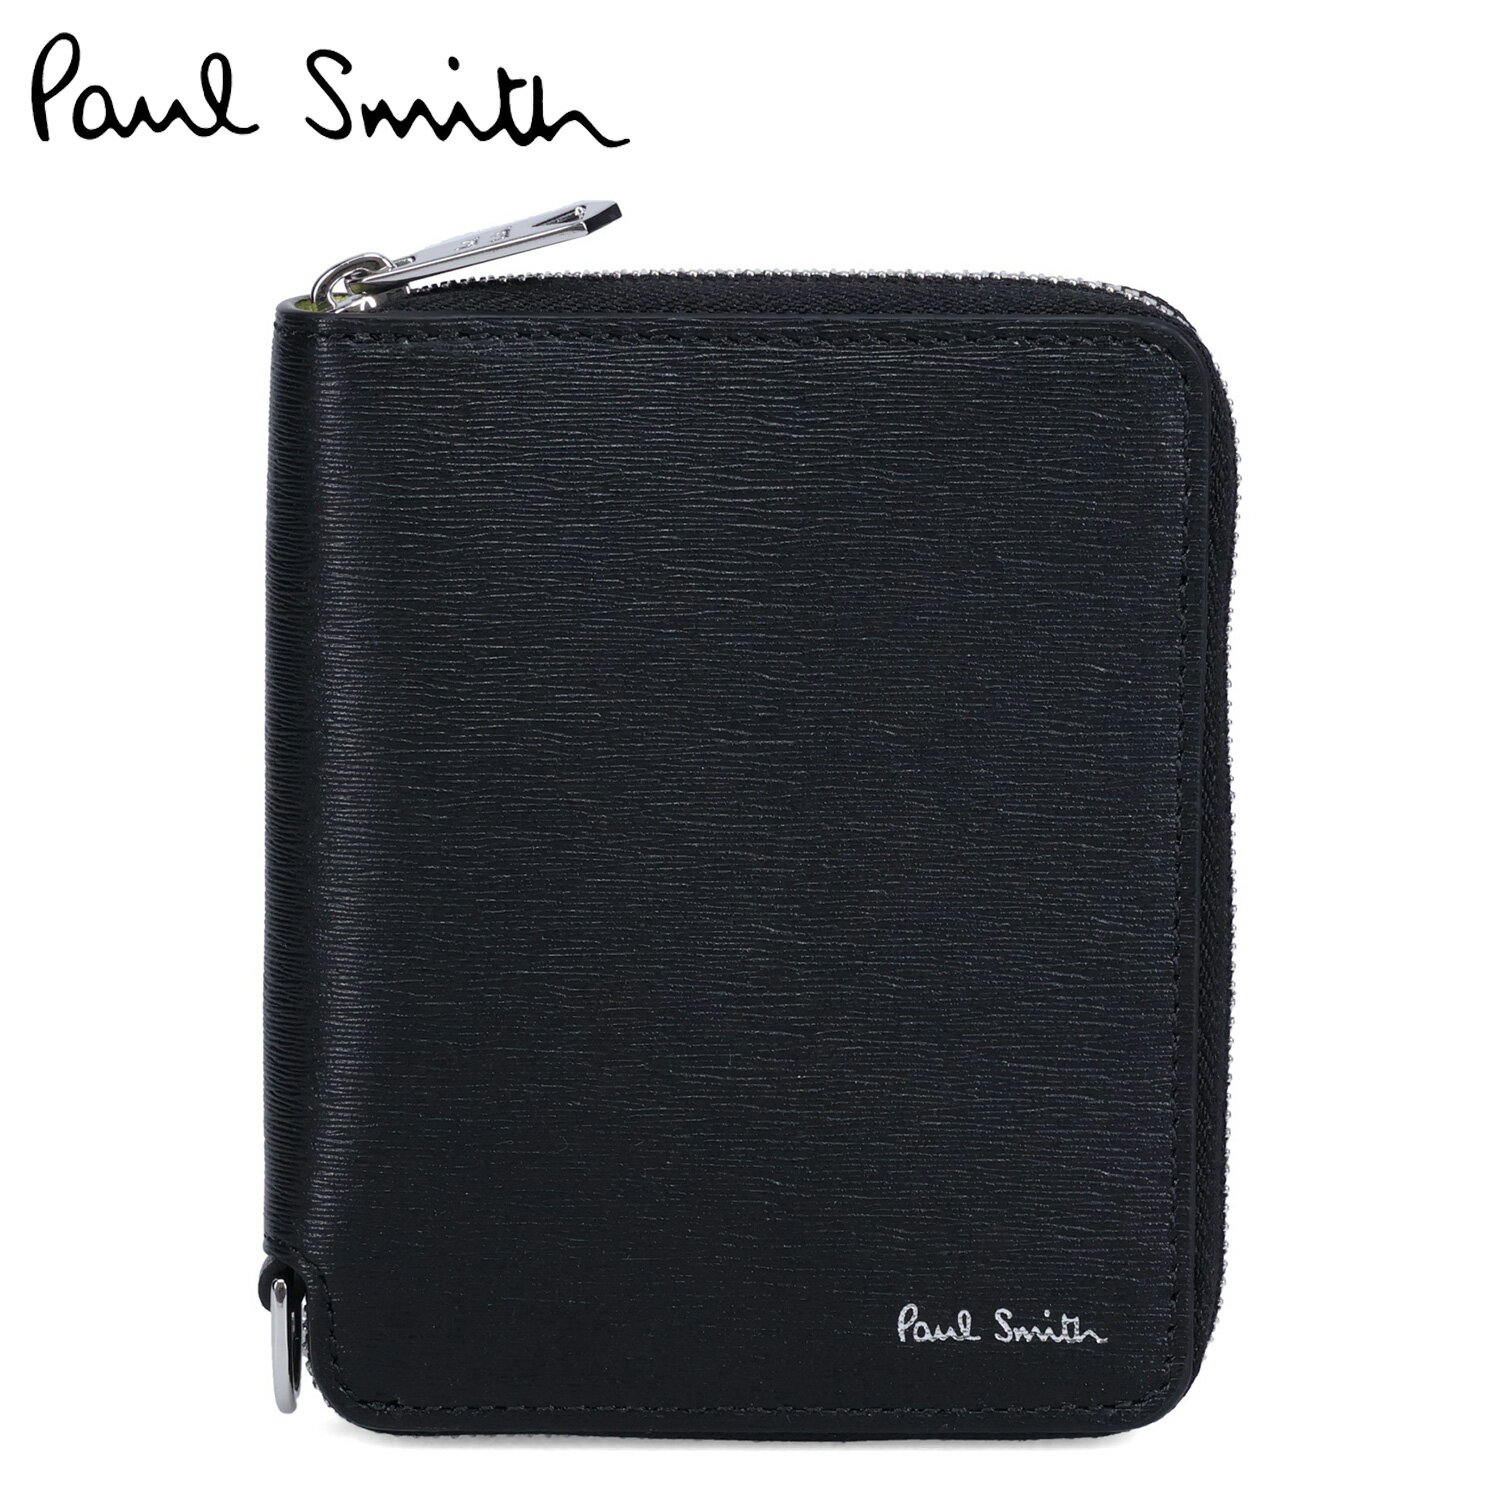 ポール・スミス 革二つ折り財布 メンズ Paul Smith WALLET ZIP BFOLD ポールスミス 財布 二つ折り財布 メンズ 本革 ラウンドファスナー ブラック 黒 M1A-6702-KSTRGS